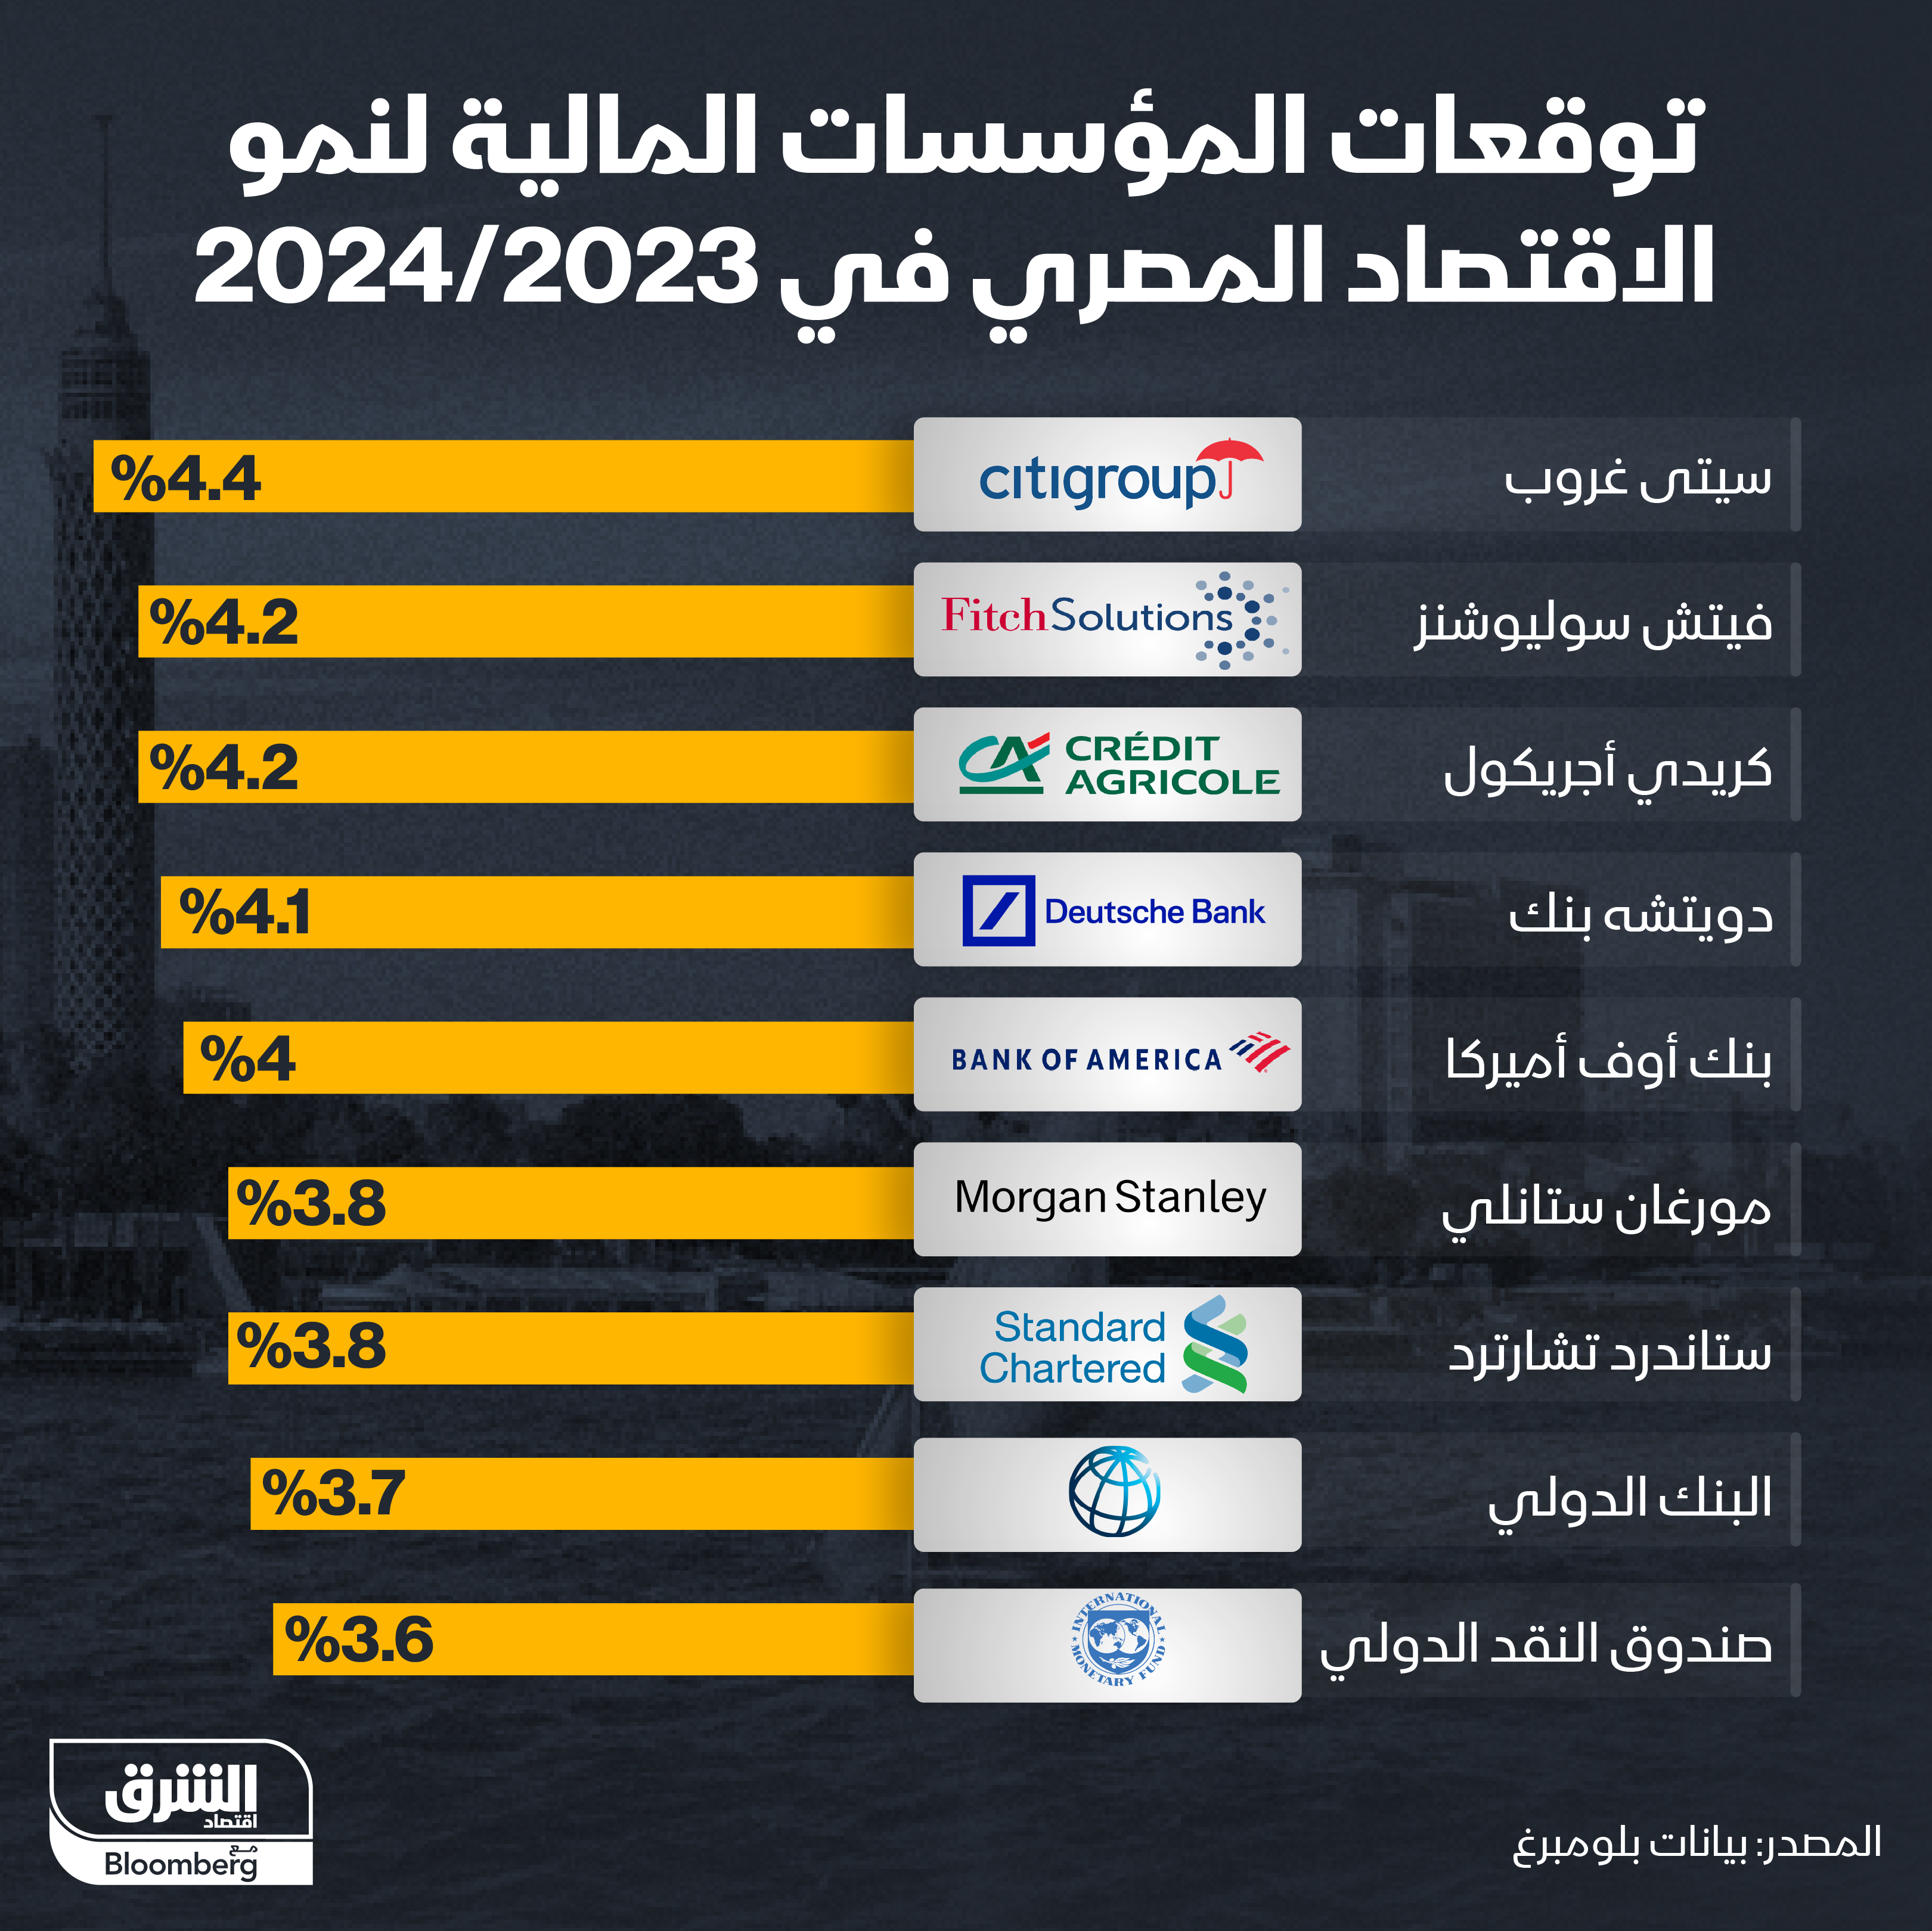 توقعات المؤسسات المالية لنمو الاقتصاد المصري في 2023/2024